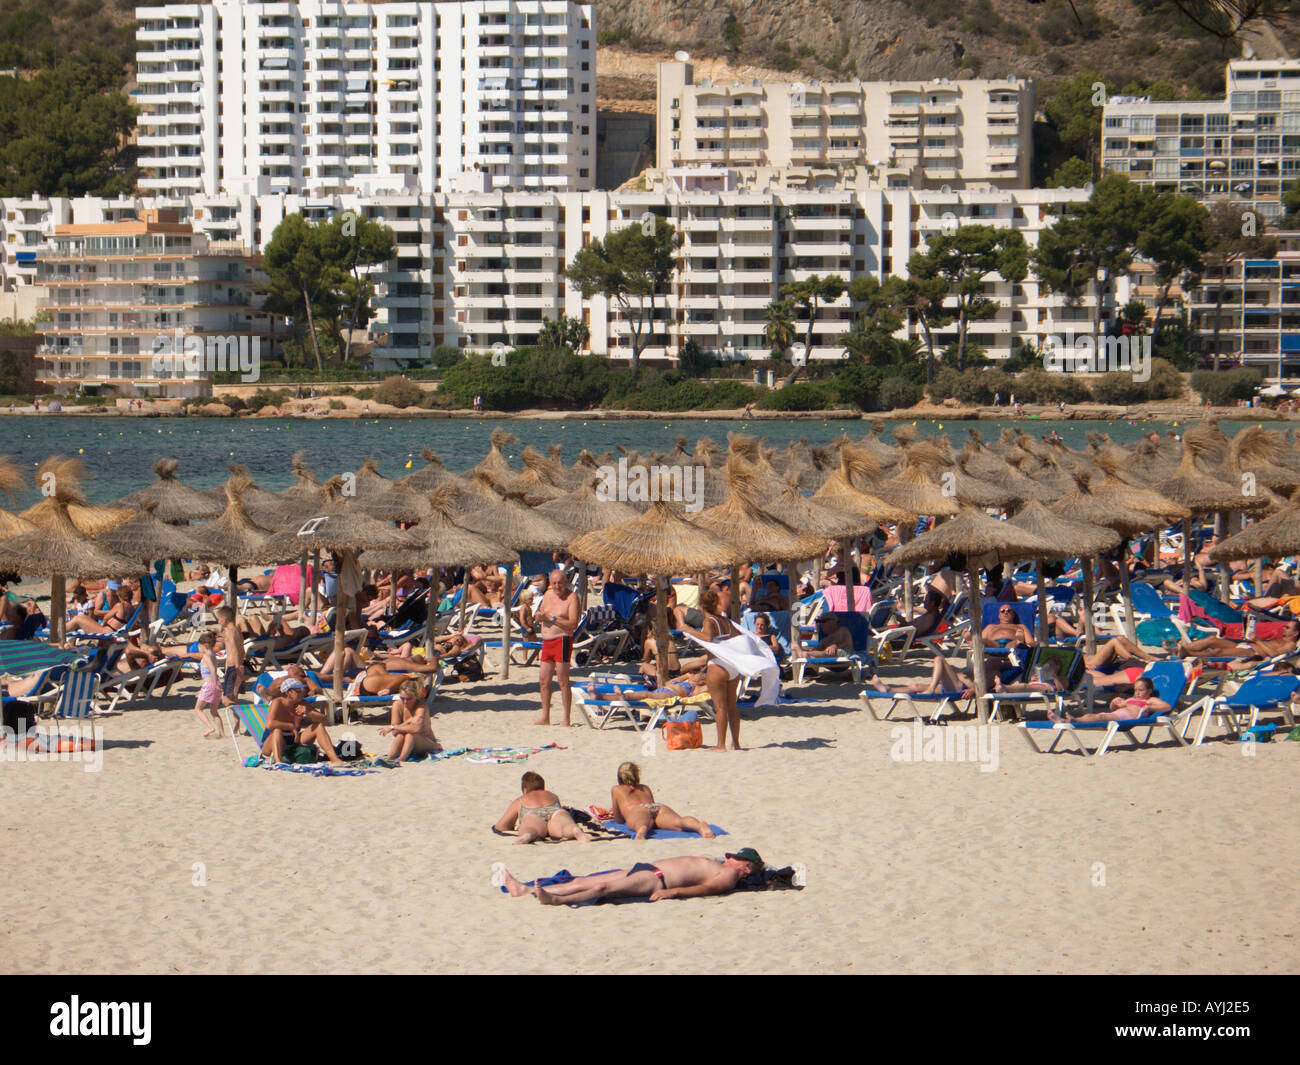 Santa Ponsa Bay and beach scene Ponent Region Majorca Spain Stock Photo -  Alamy